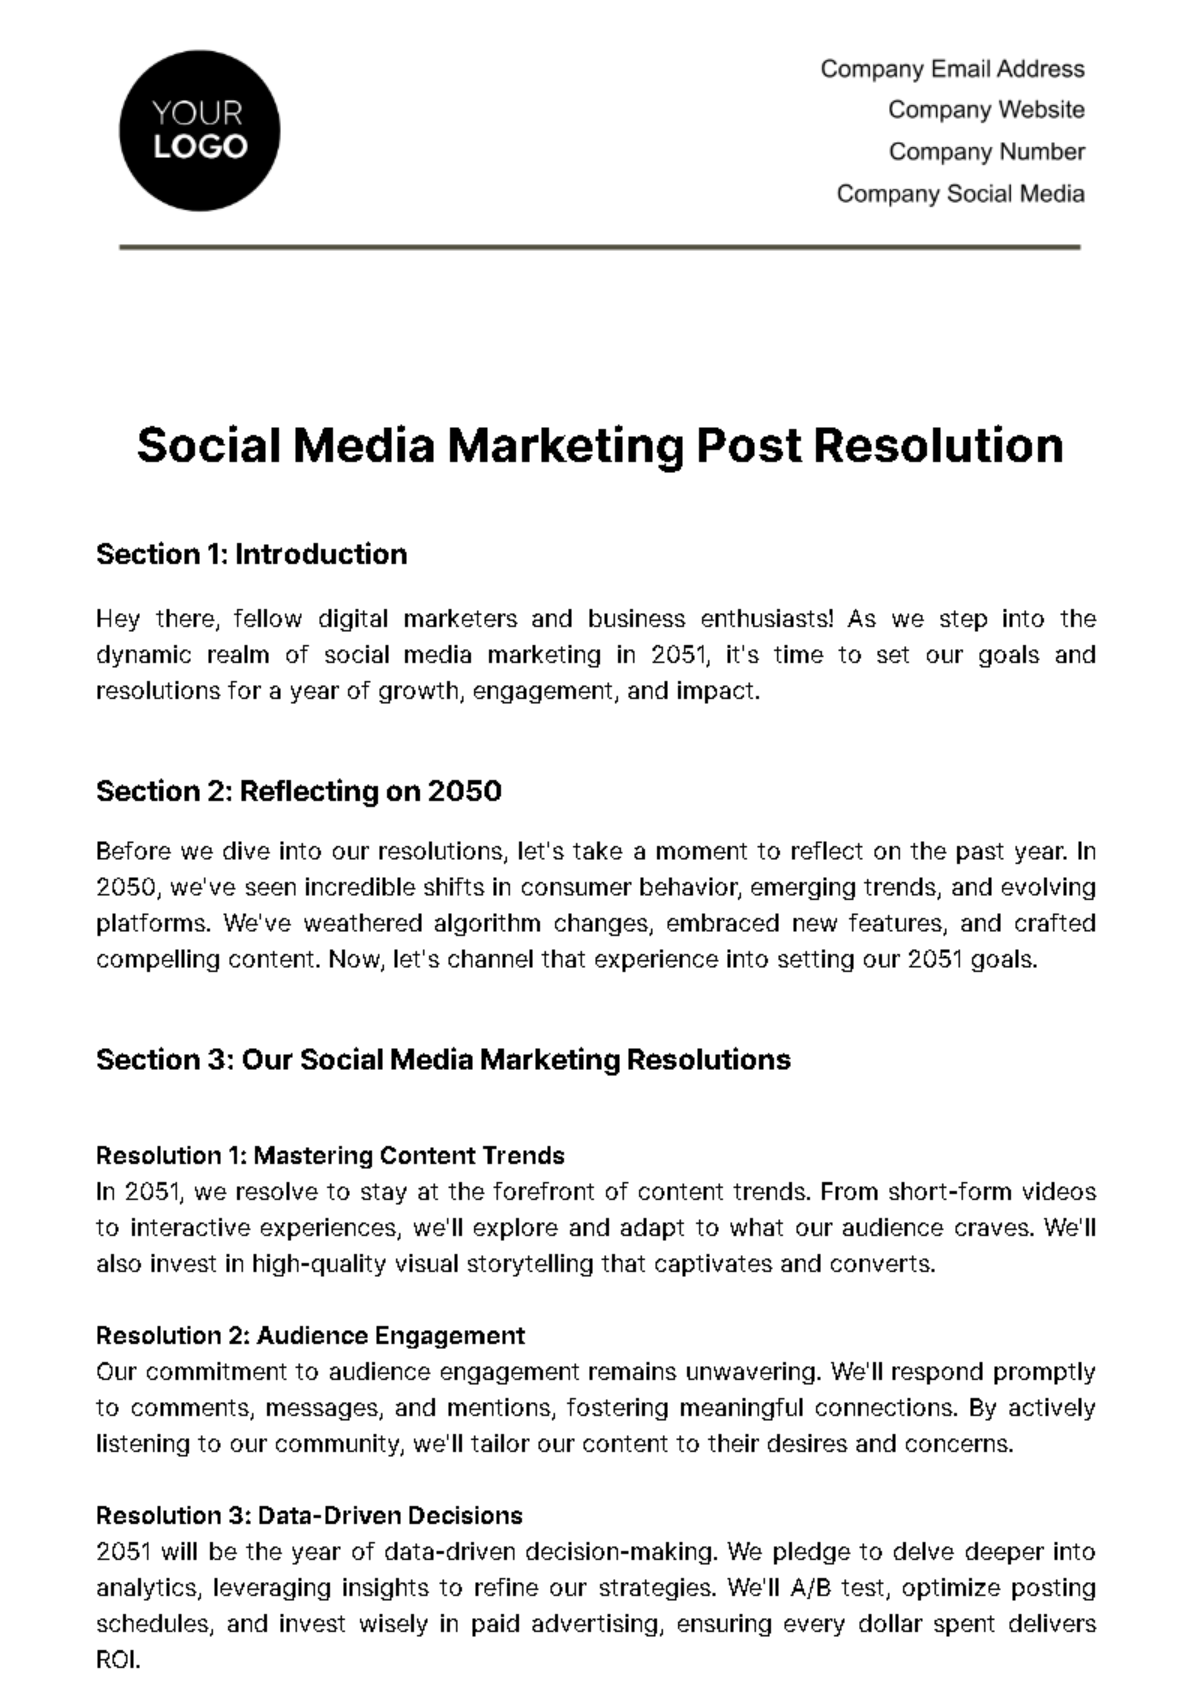 Social Media Marketing Post Resolution Template